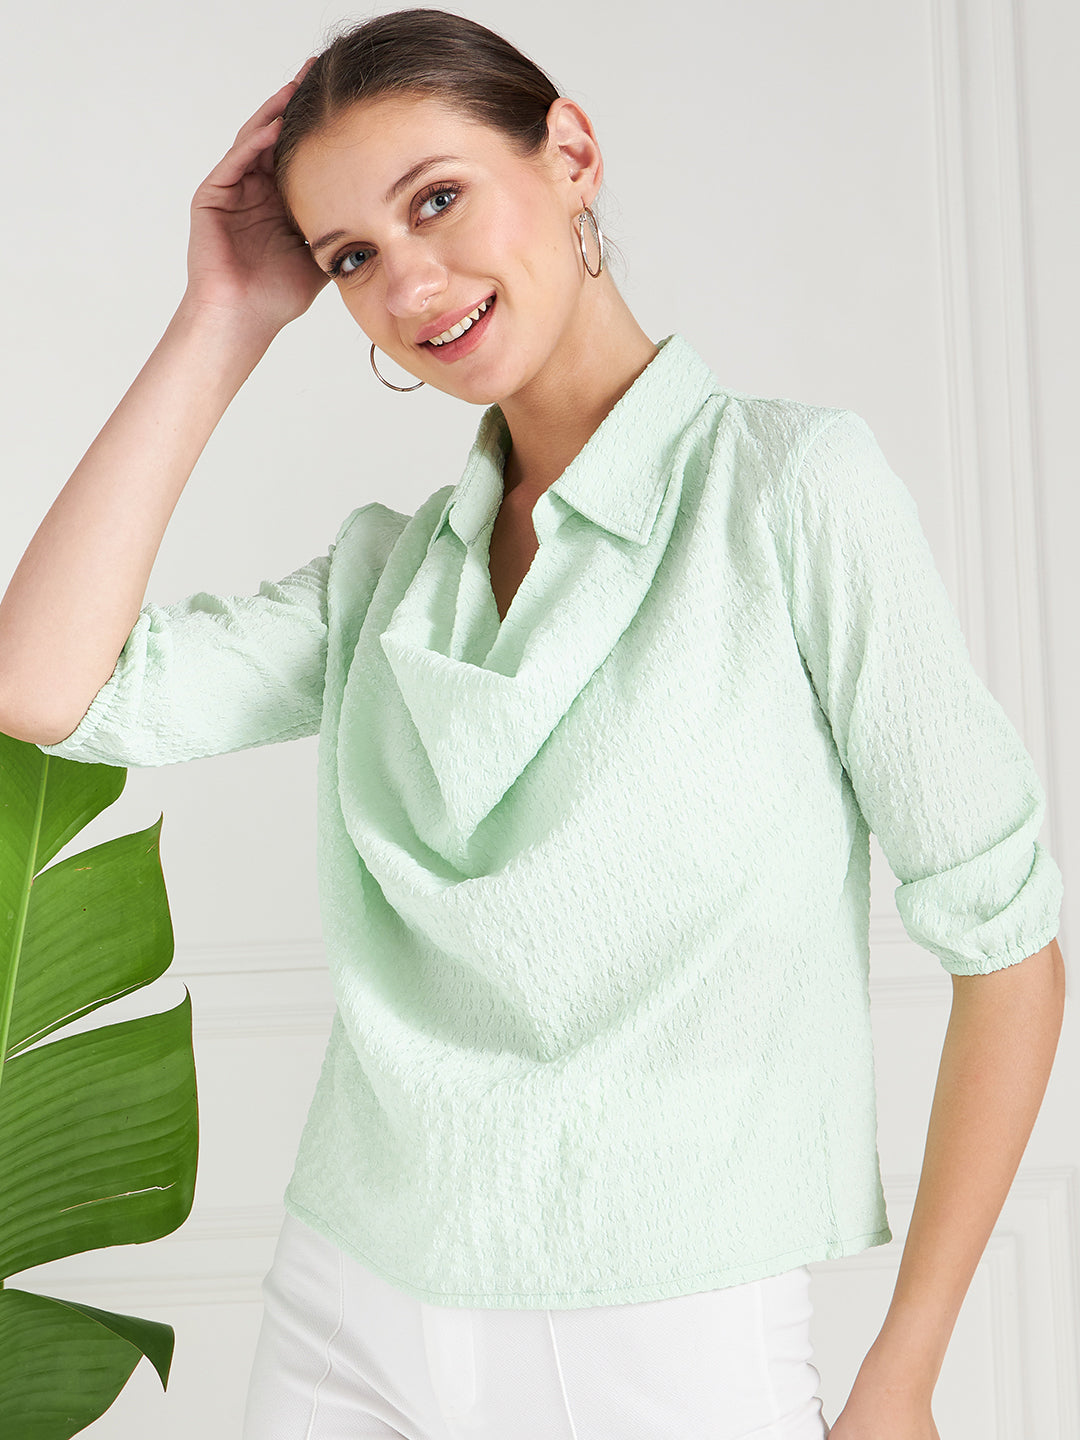 Athena Green Self Design Shirt Style Cowl Top - Athena Lifestyle